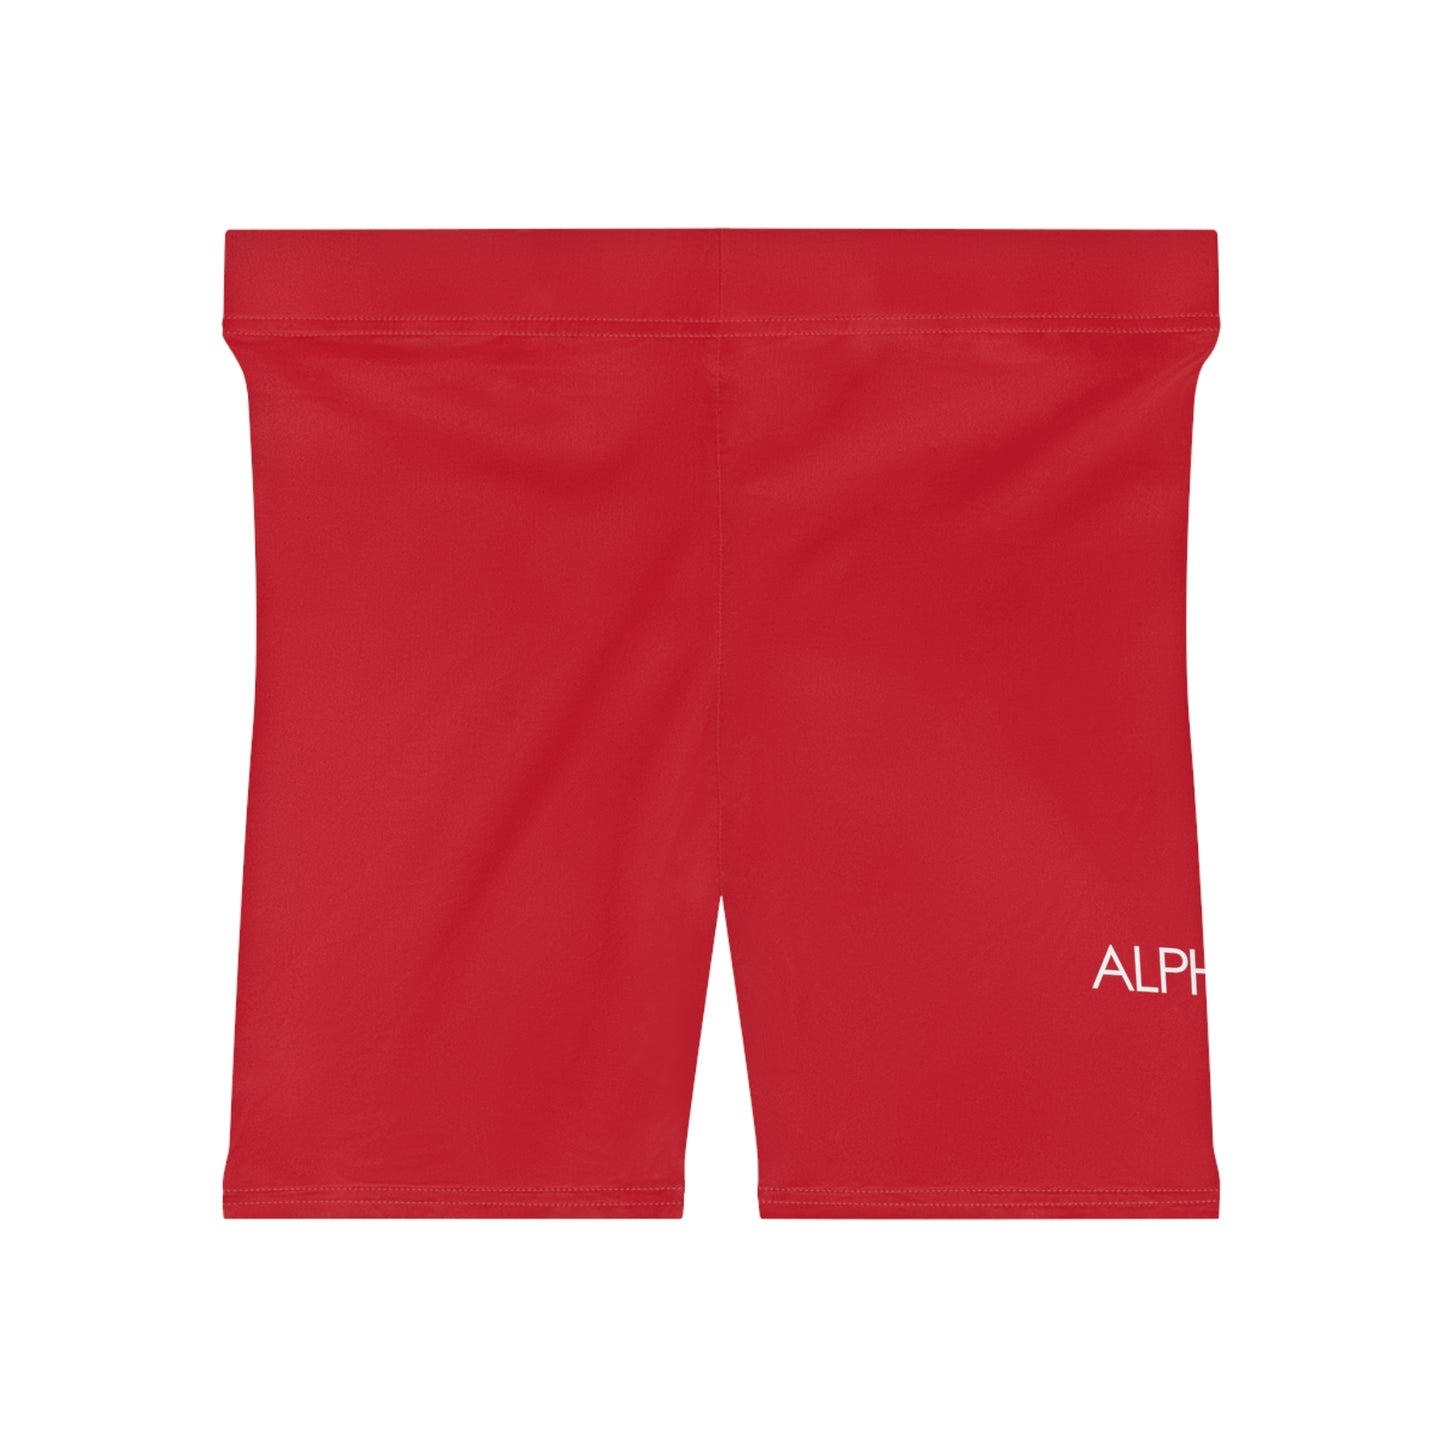 AlphaChic Biker Shorts - Red (Leg Logo)